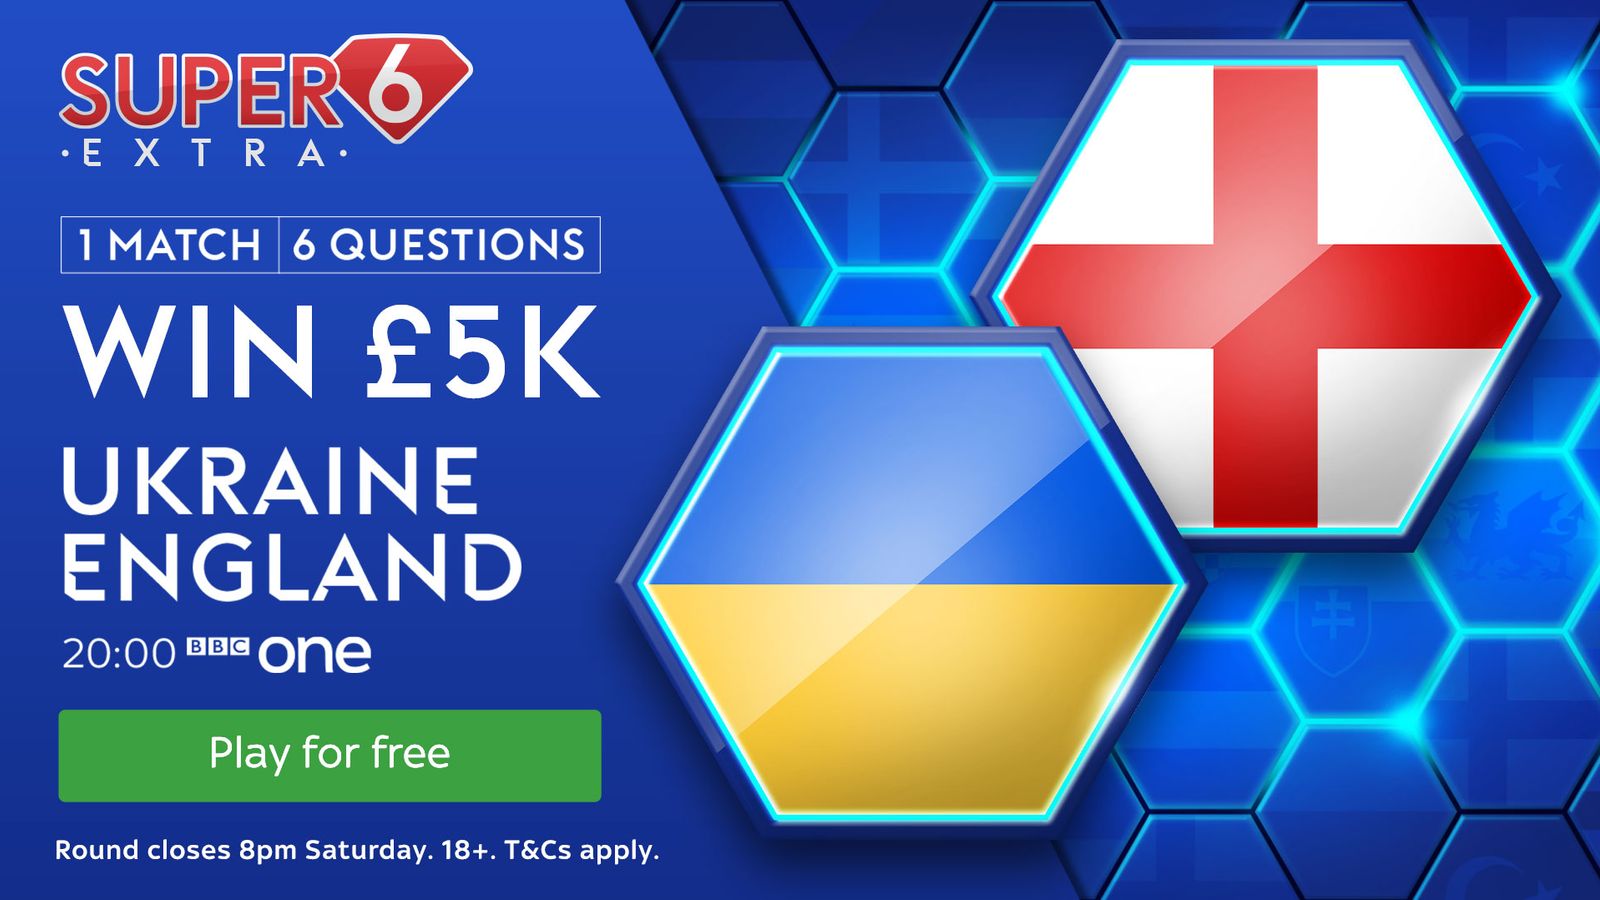 Super 6 Extra: Ukraine vs England - bring the jackpot home!